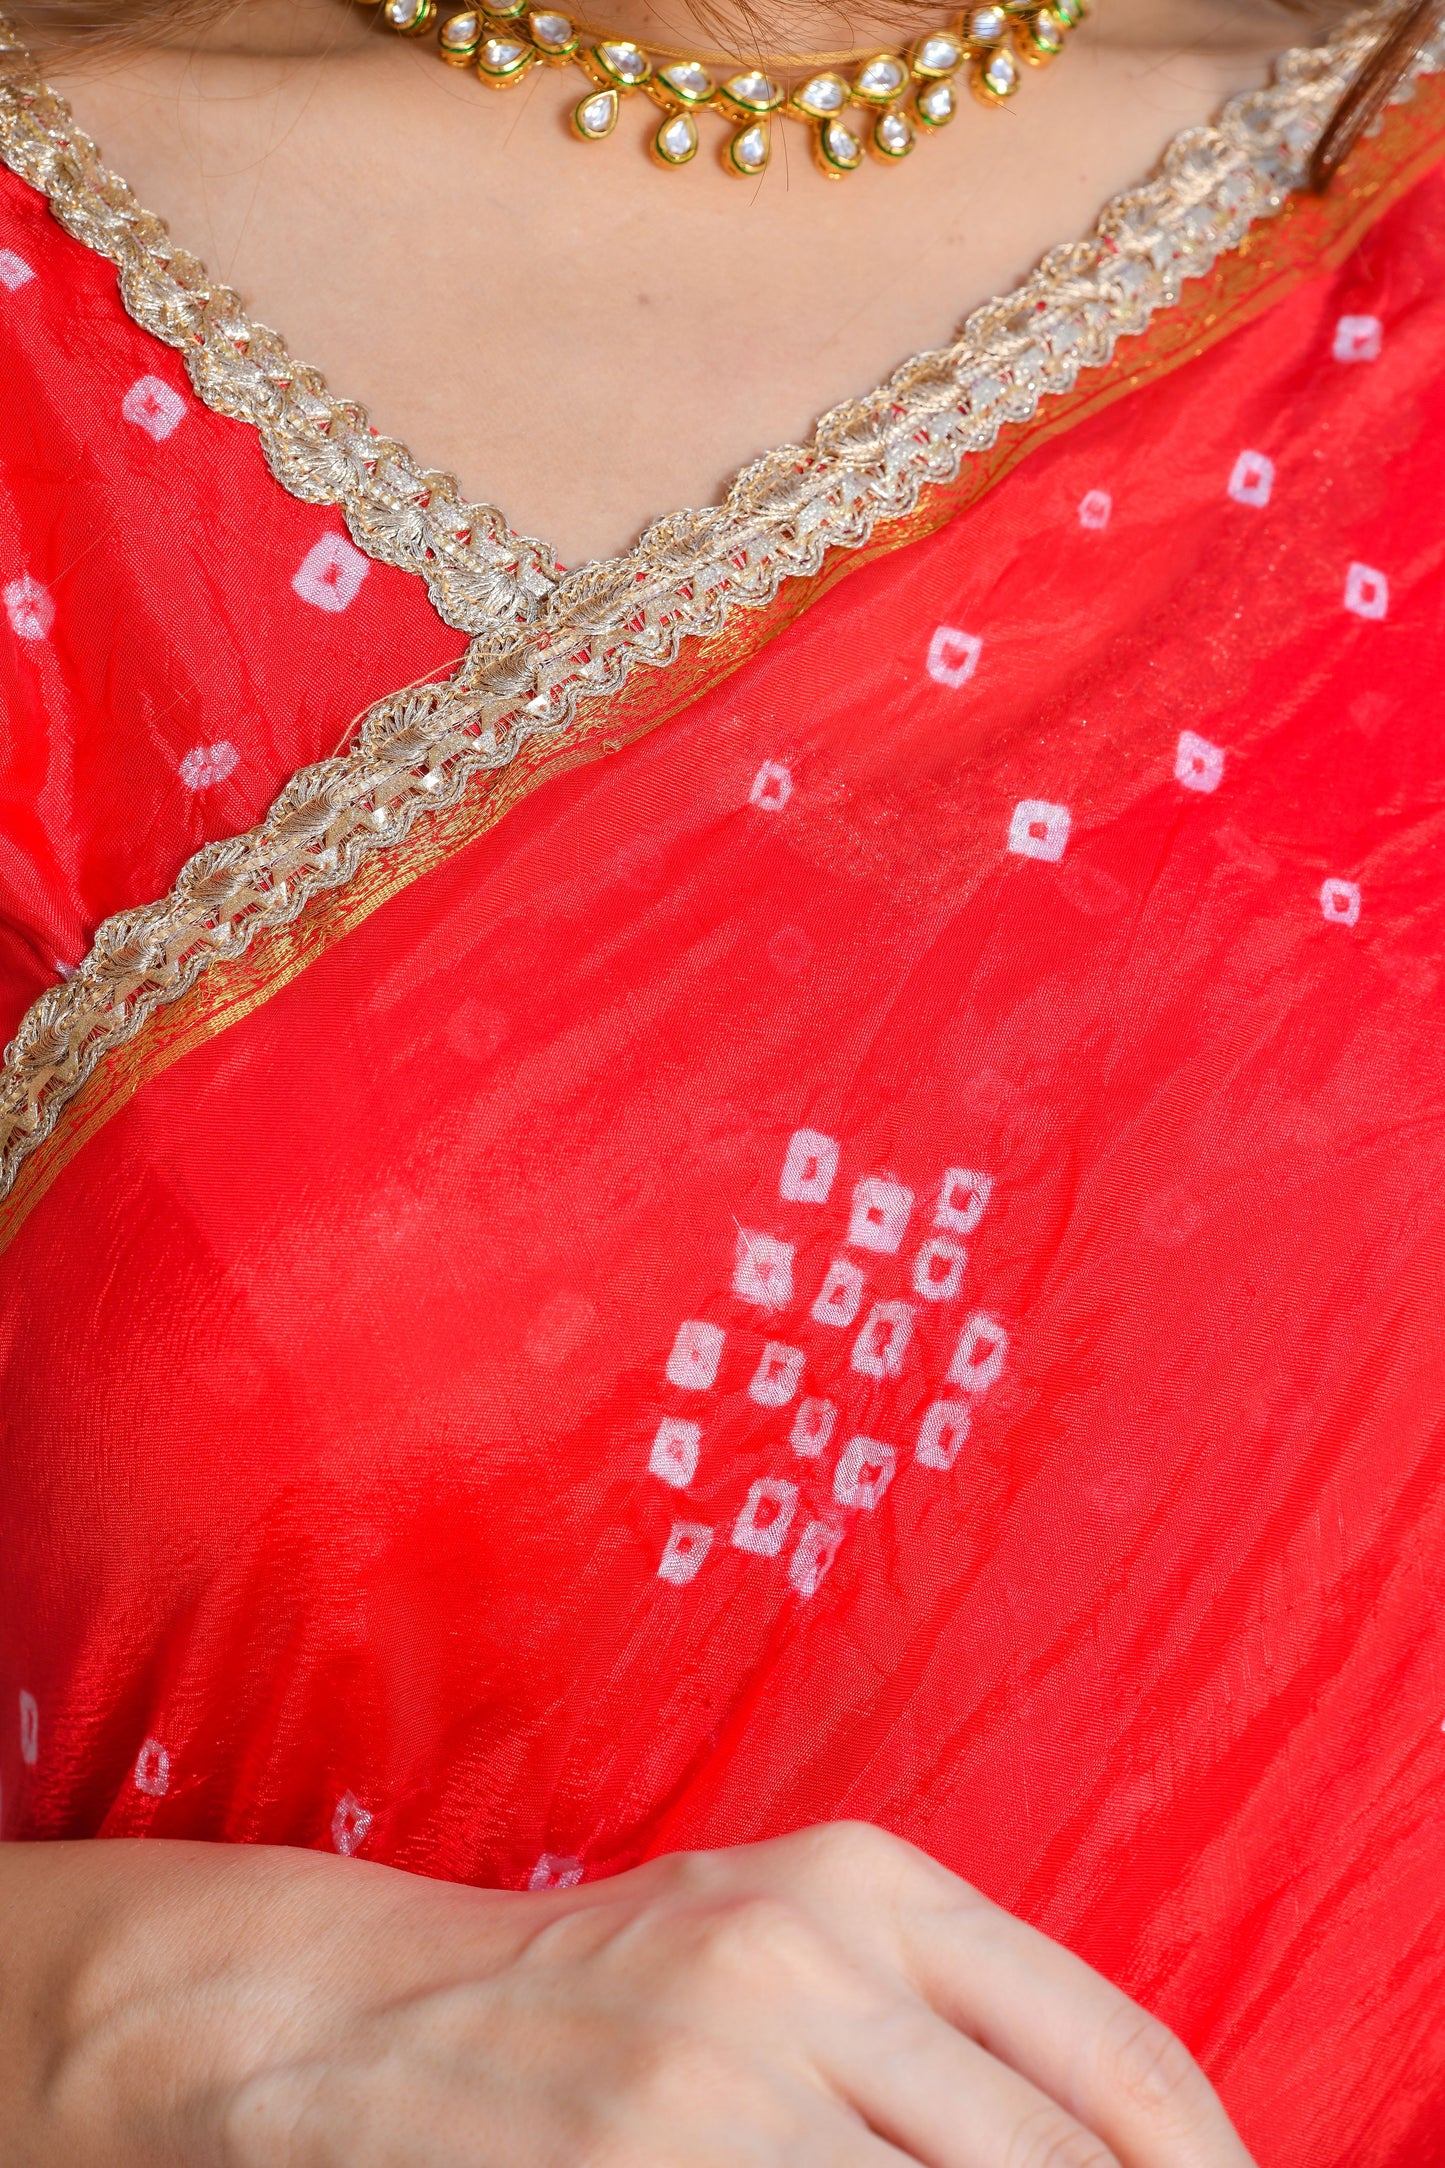 Red bandhani saree